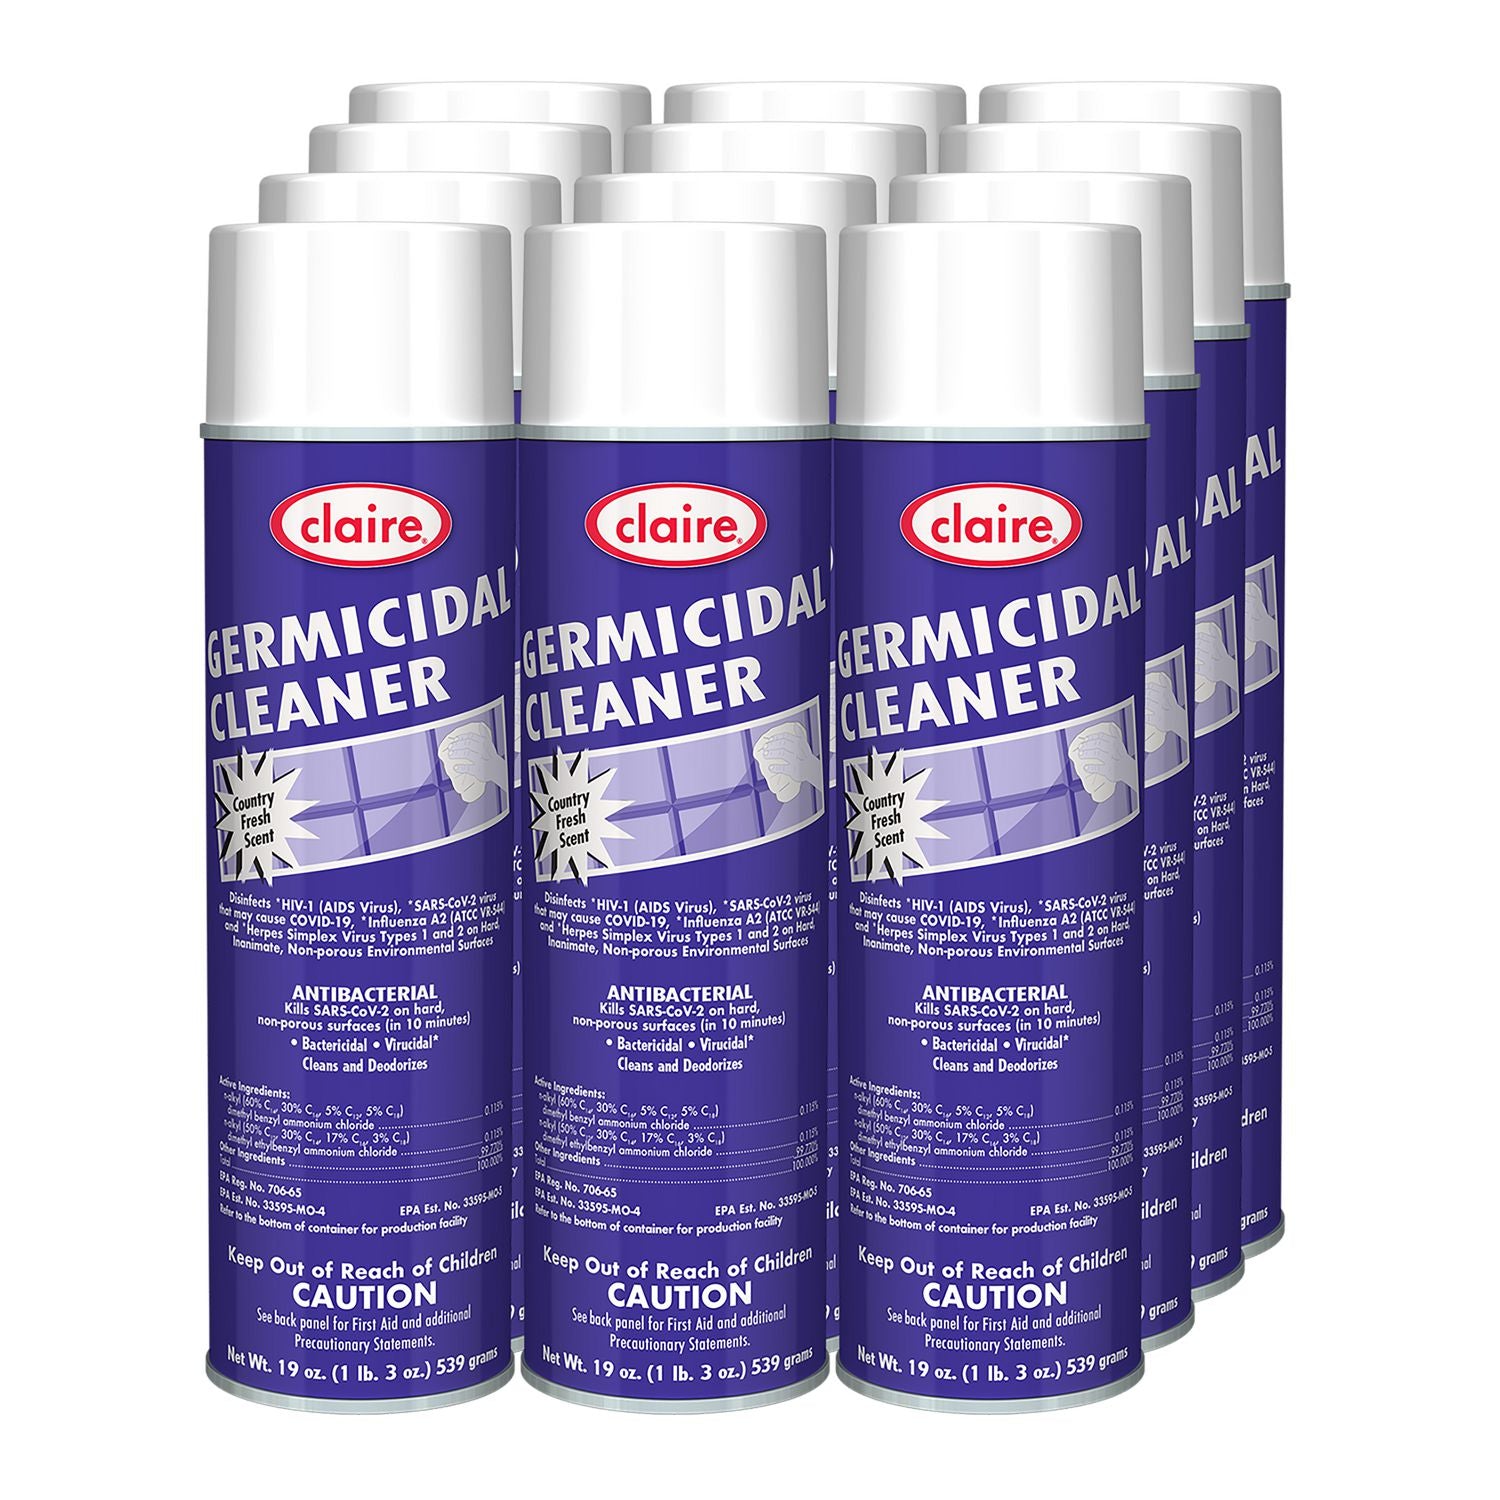 germicidal-cleaner-country-fresh-scent-19-oz-aerosol-spray-12-carton_cgc876 - 3